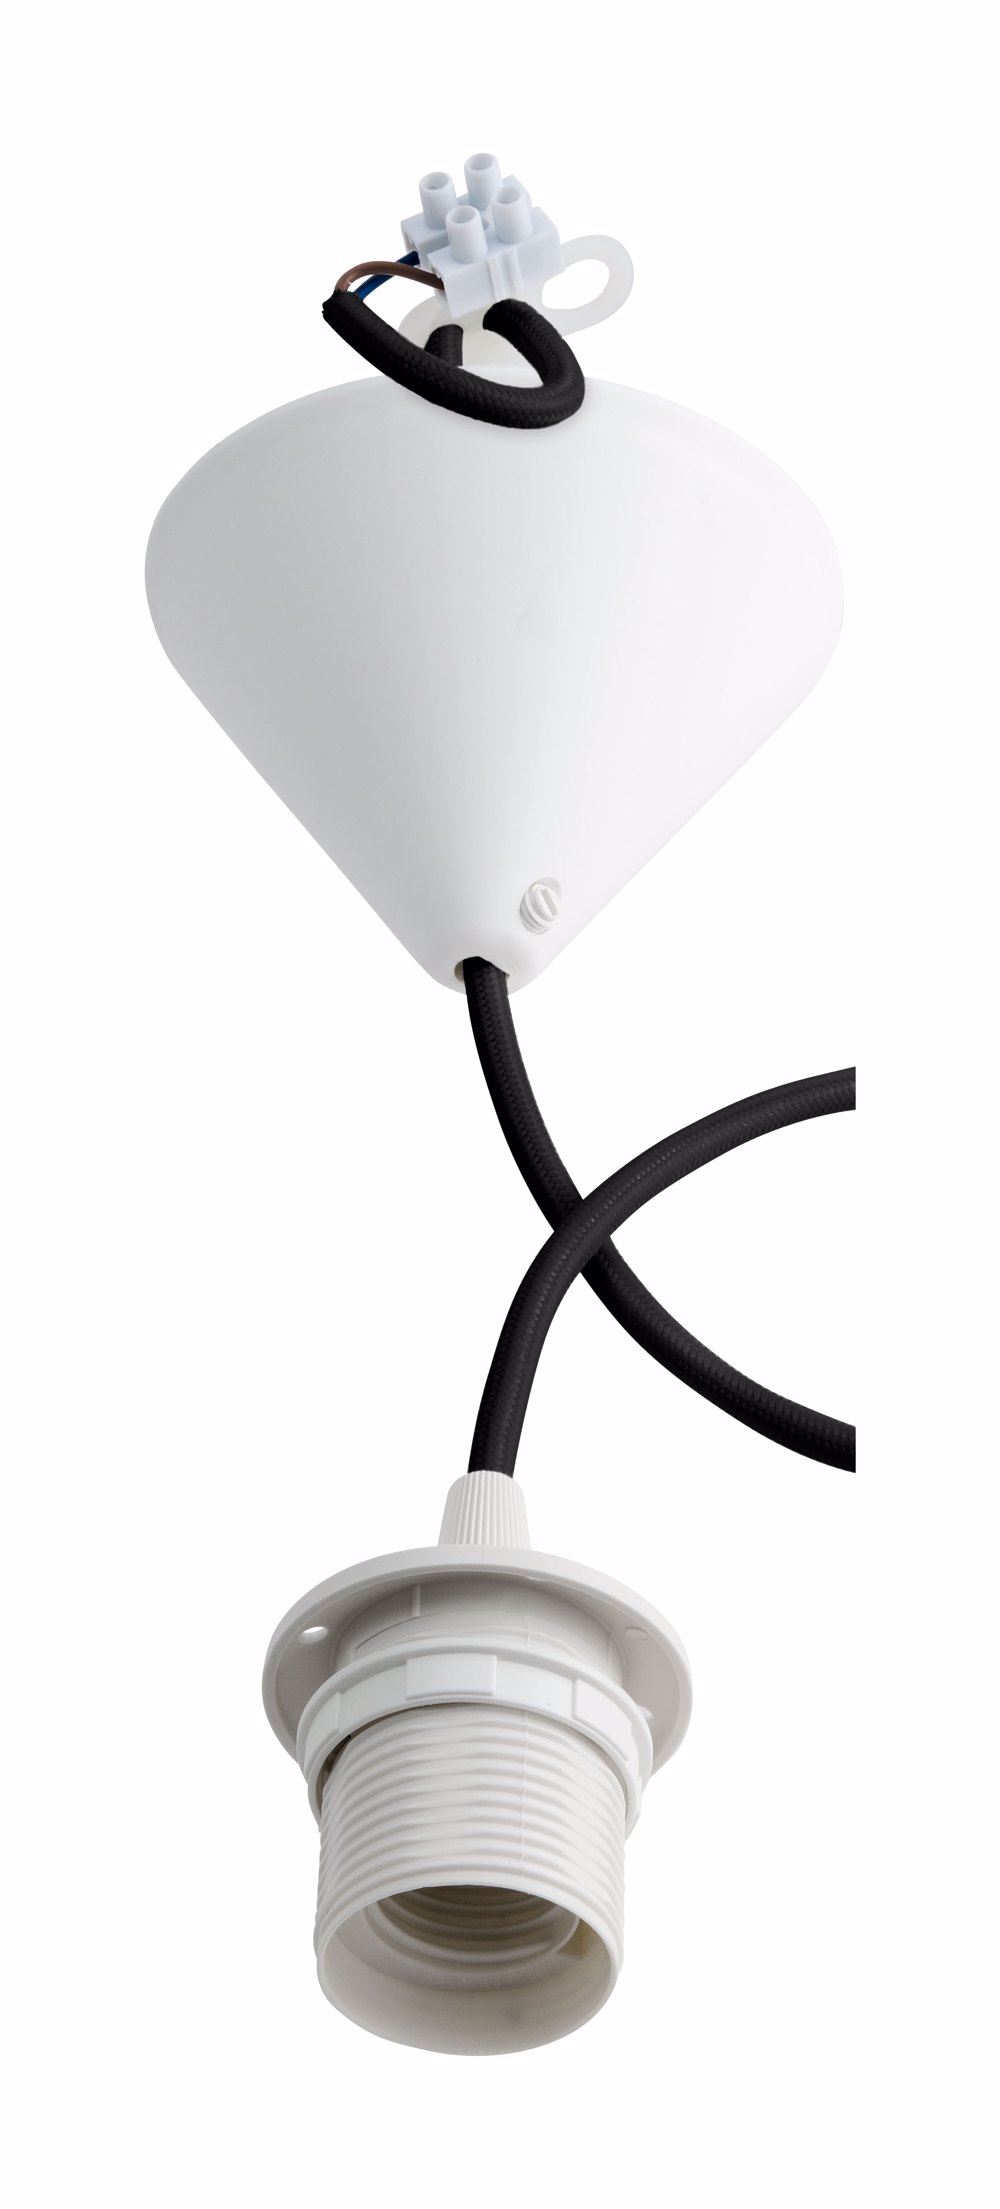 Billiga Lampupphäng med textilkabel och takkåpa, plast online på nätet